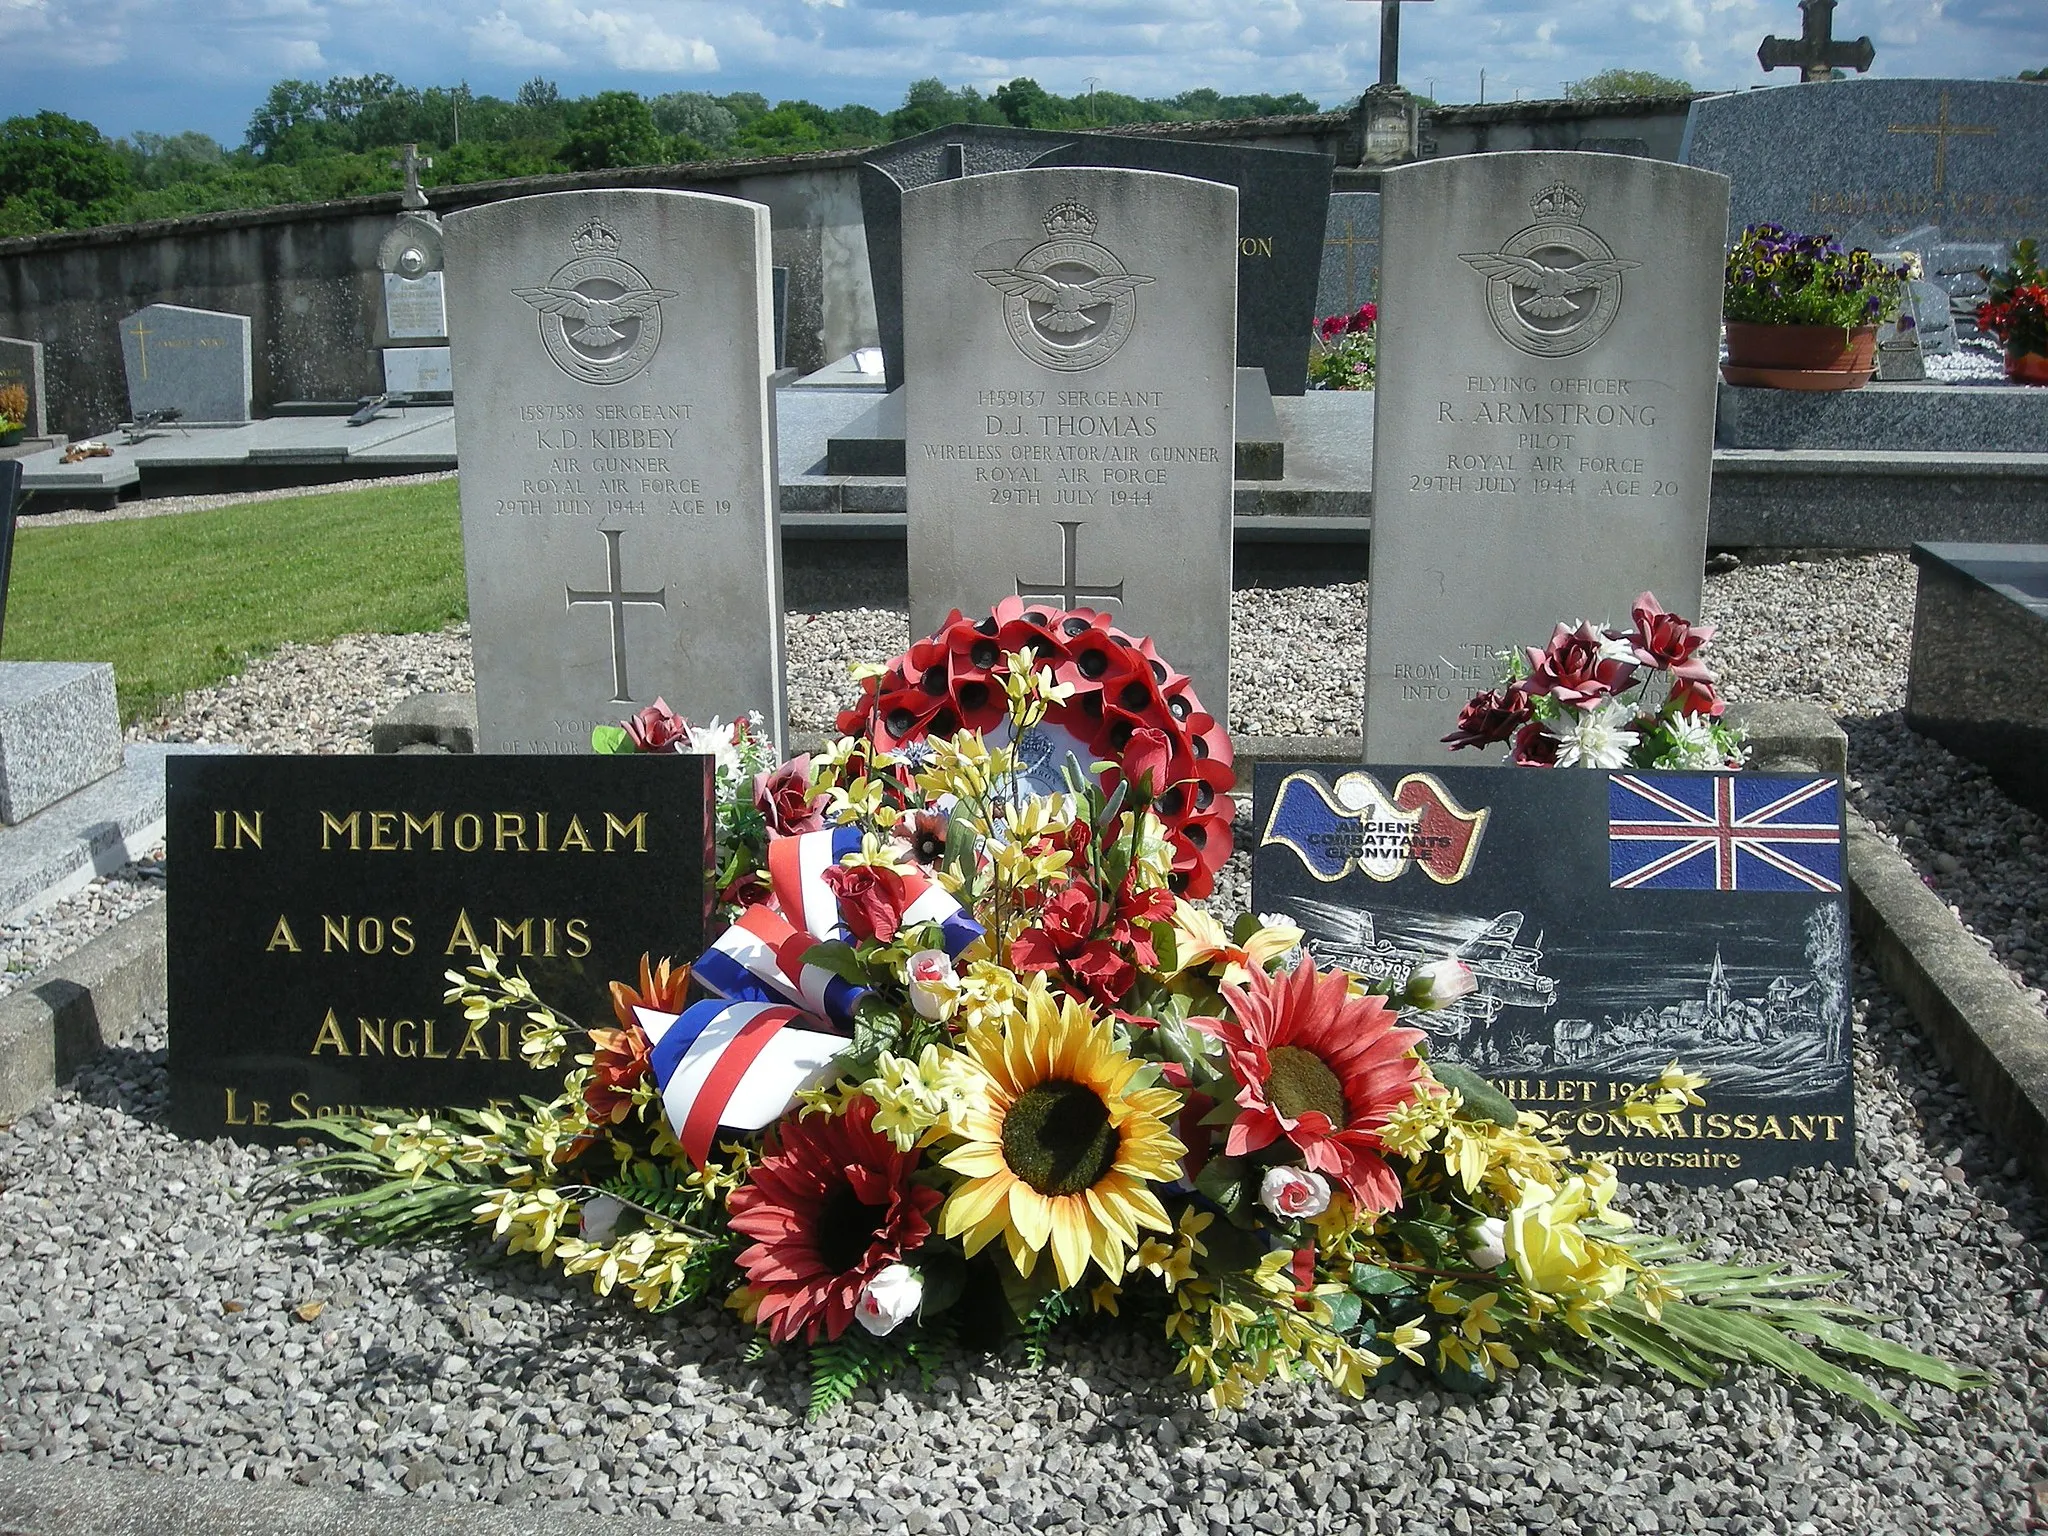 Photo showing: Tombes de 3 soldats britanniques de la Royal Air Force au cimetière de Glonville (Meurthe-et-Moselle) : Sergeant K. D. Kibbey (Air Gunner) ; Sergeant D. J. Thomas (Wireless Operator/Air Gunner) ; Flying Officer : R. Armstrong (Pilot), tombés le 29 juillet 1944 [1]